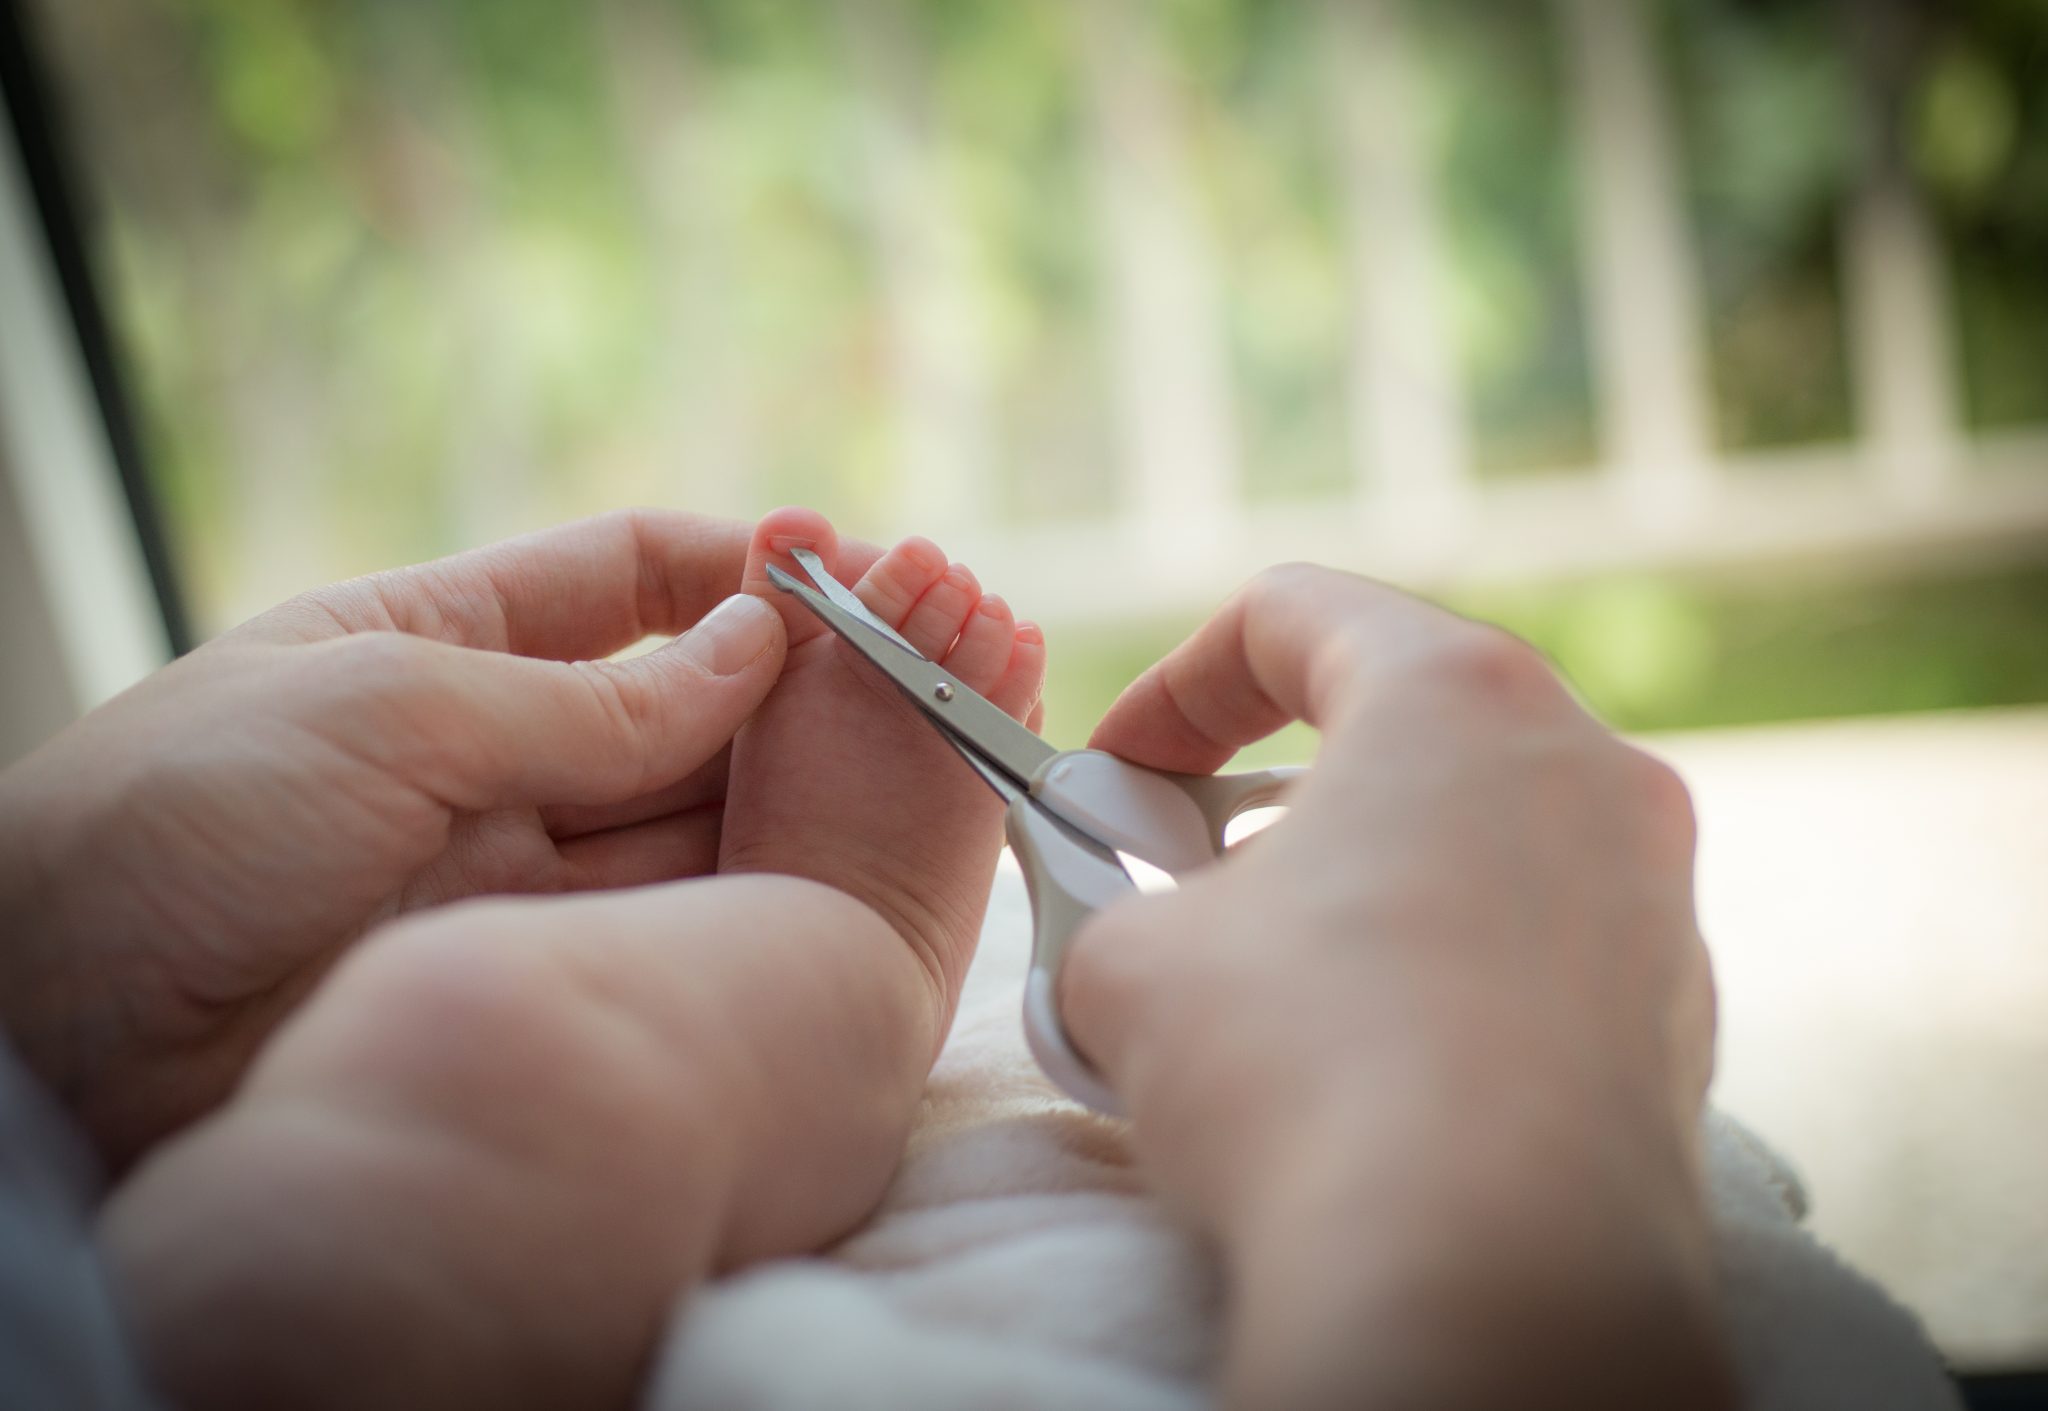 Можно спящему ребенку подстричь ногти